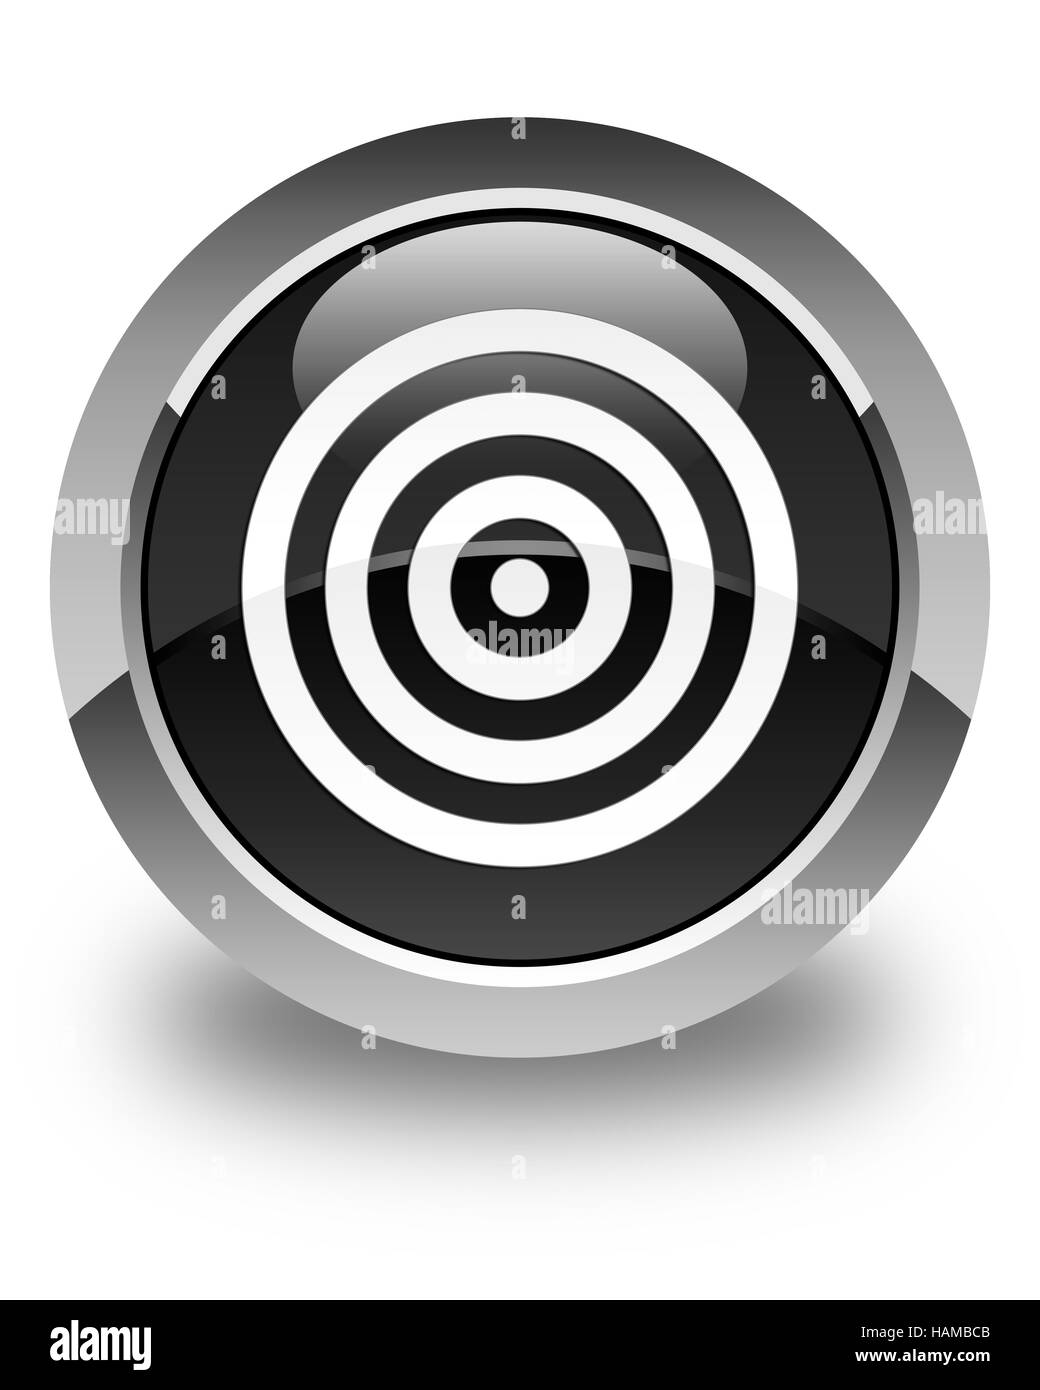 Zielsymbol isoliert auf abstrakte Darstellung glänzend schwarzen runden Knopf Stockfoto